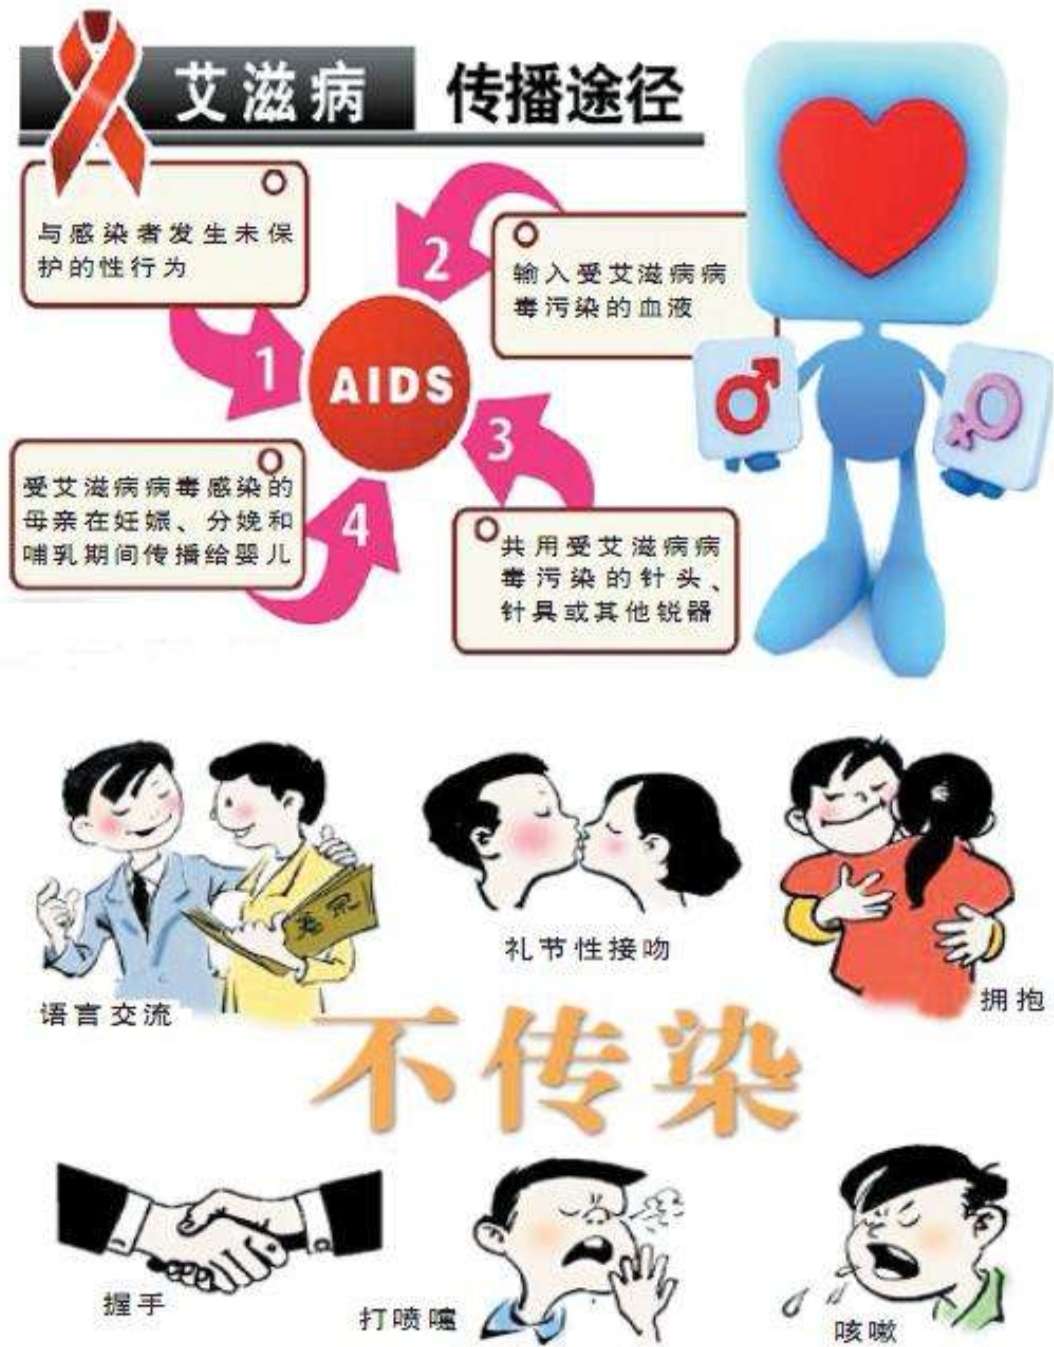 感染艾滋病的初期症状_艾滋病的初期症状图片_艾滋病初期